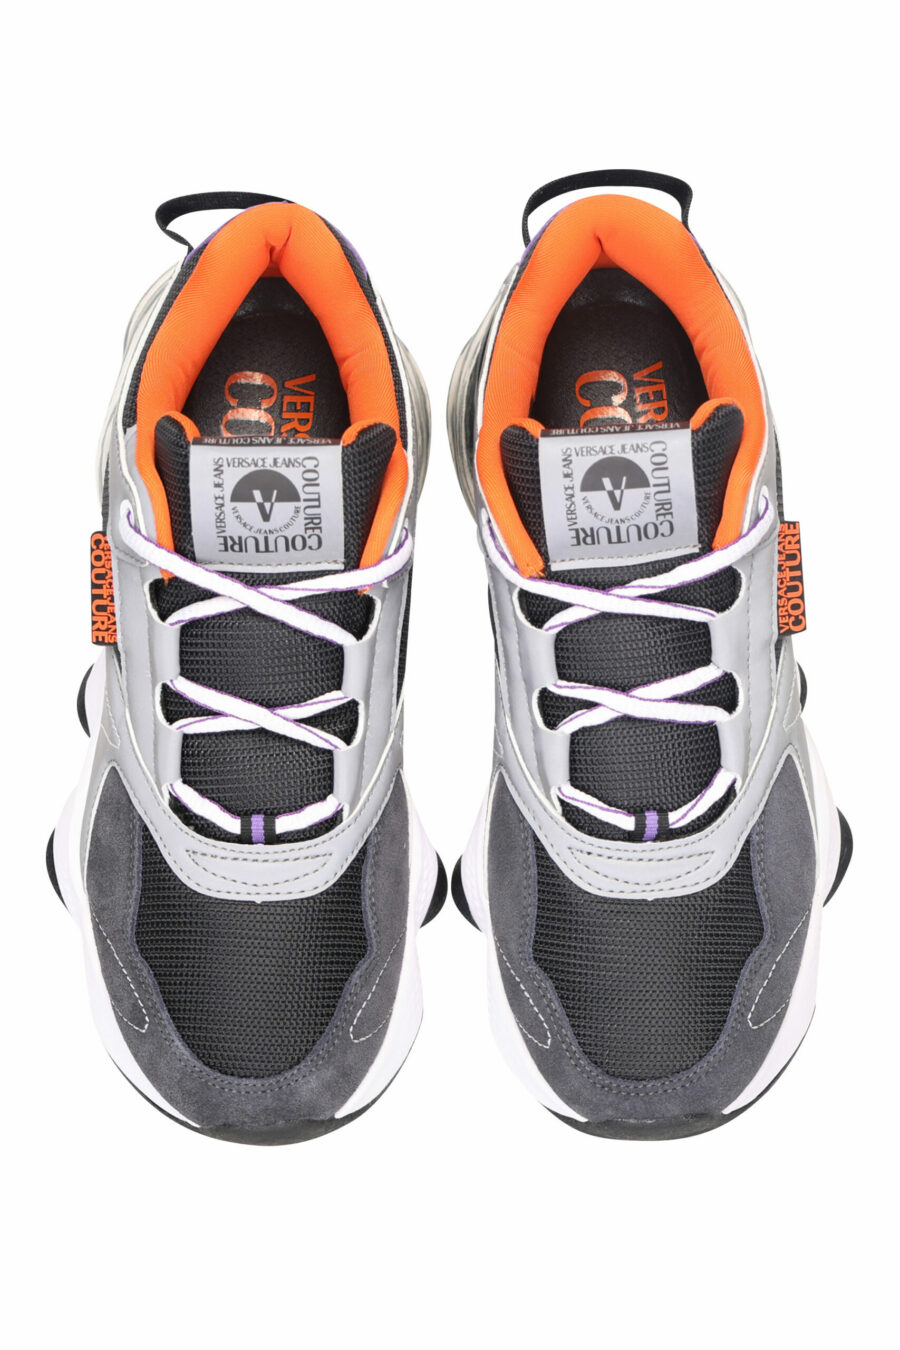 Schwarze Mix-Schuhe mit Schlauch und weißem Mini-Logo - 8052019485165 5 skaliert